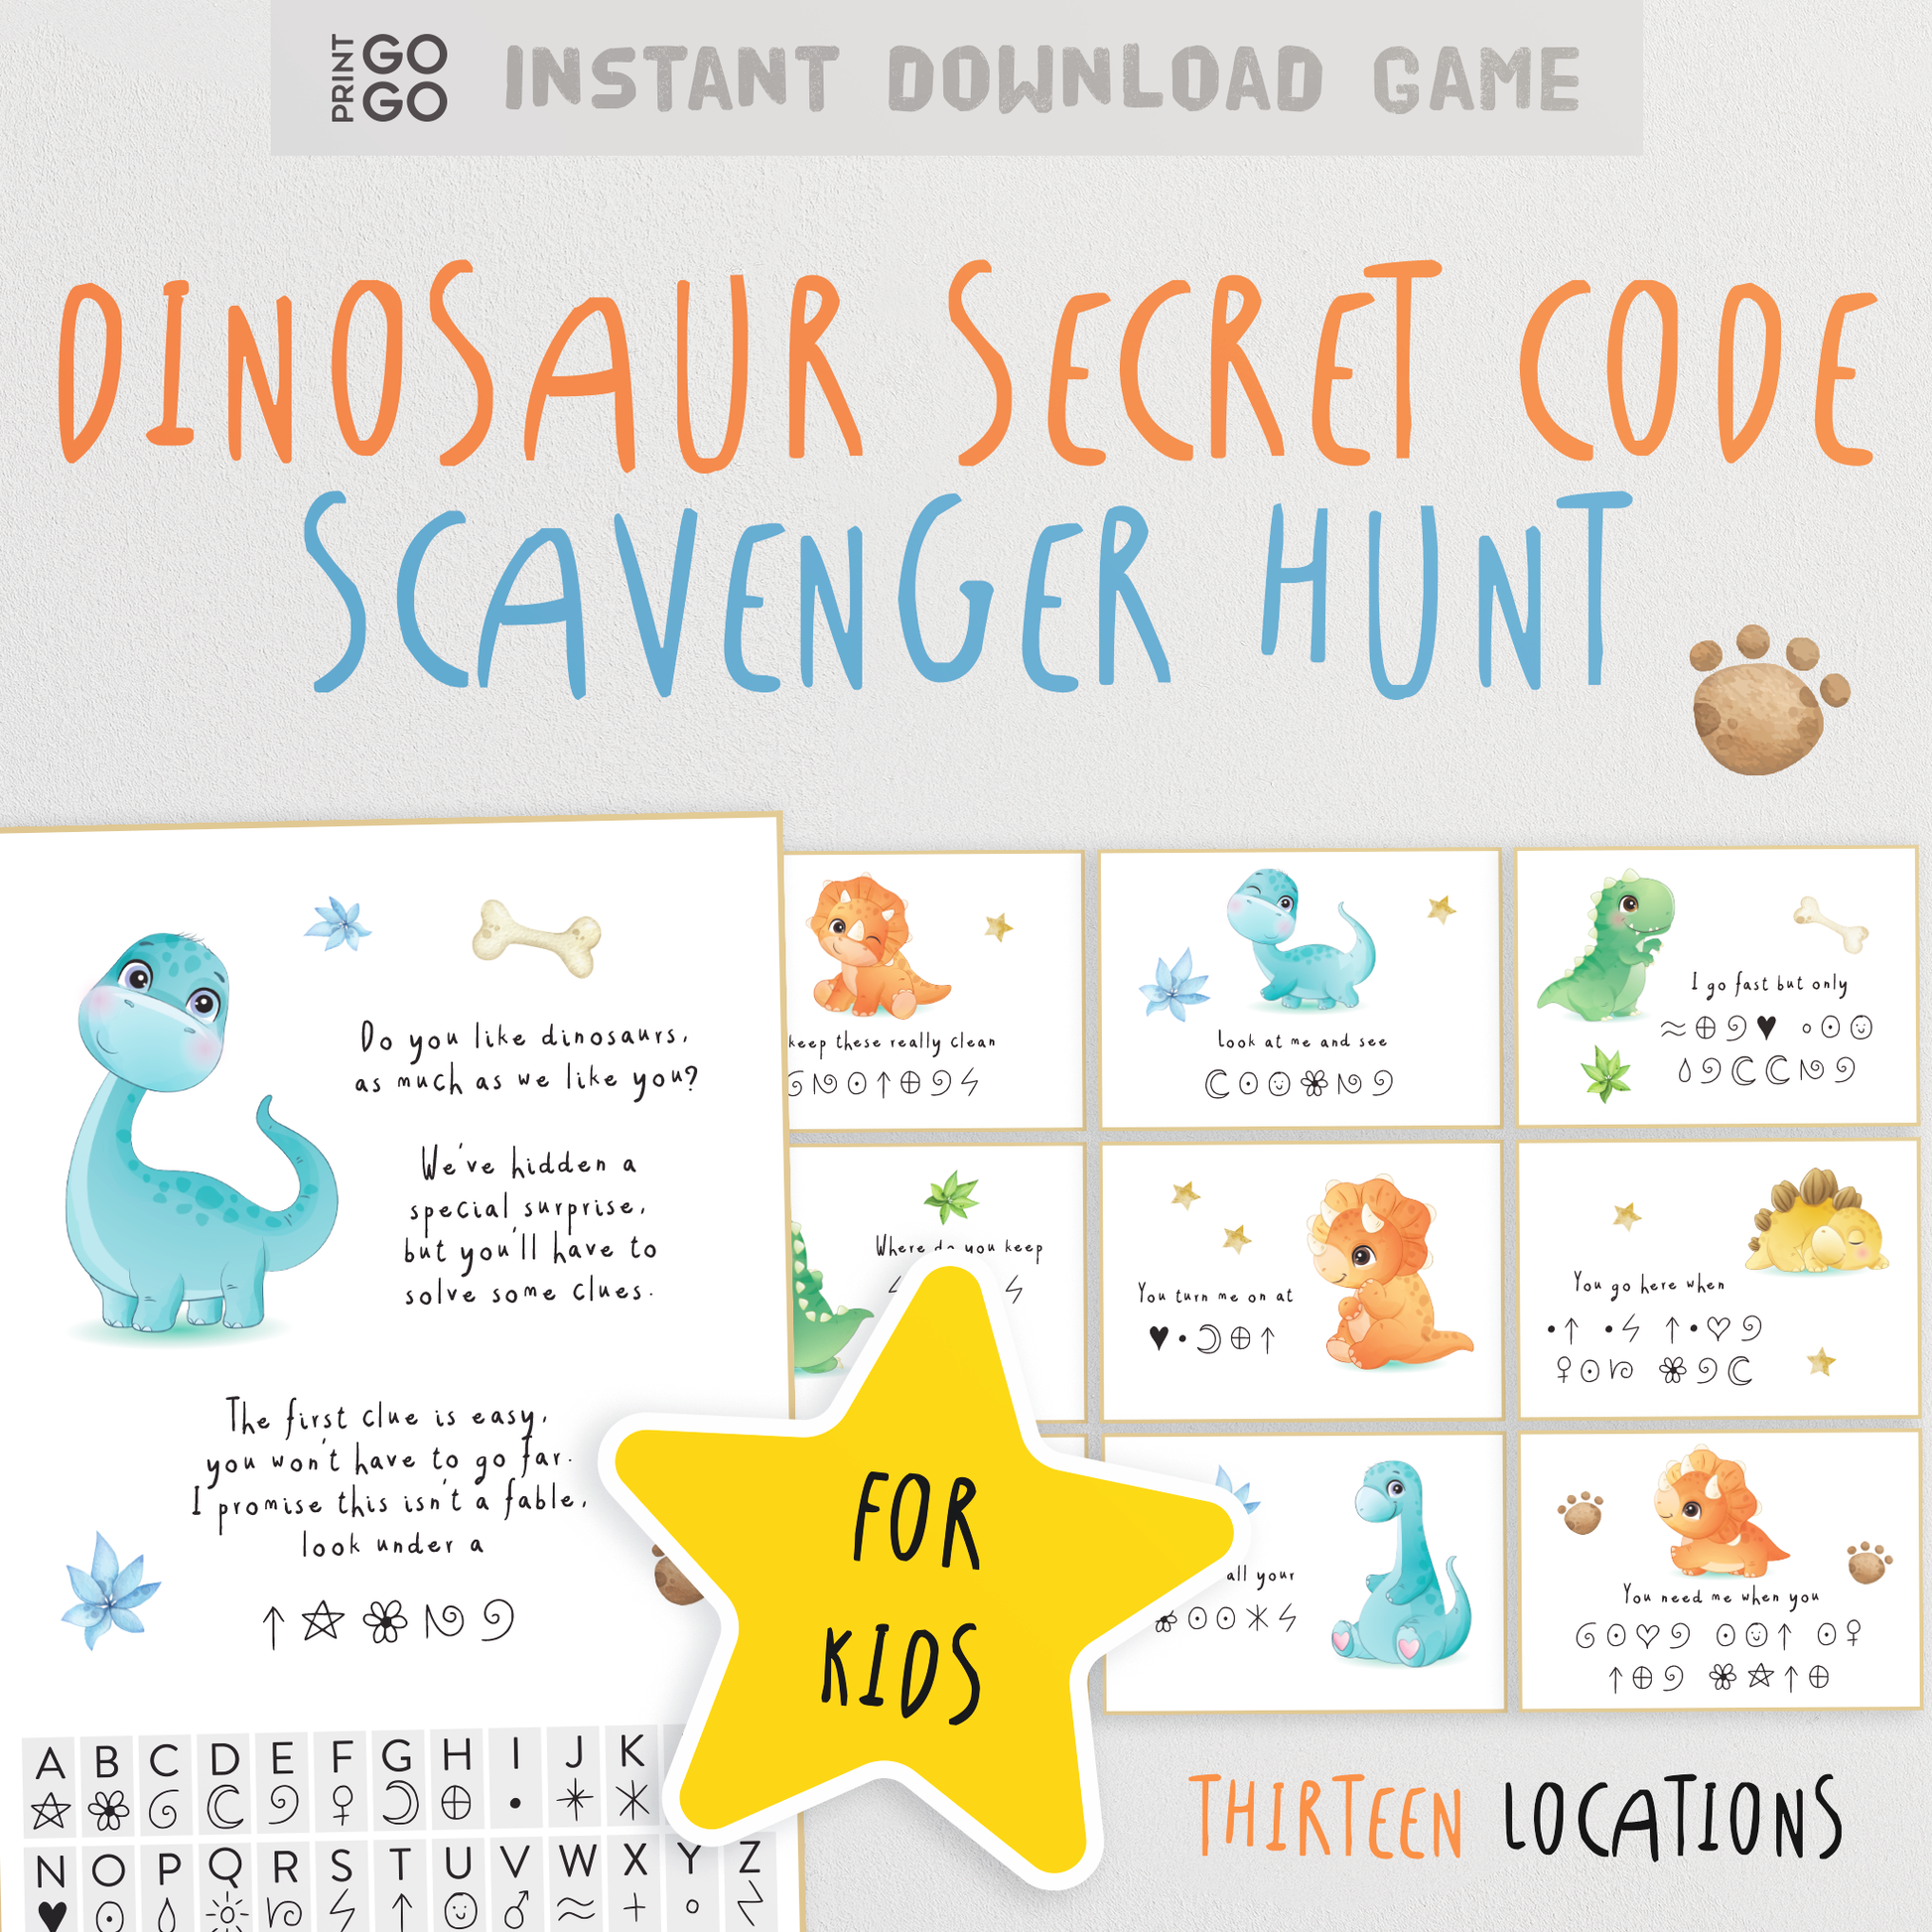 Dinosaur Secret Code Scavenger Hunt